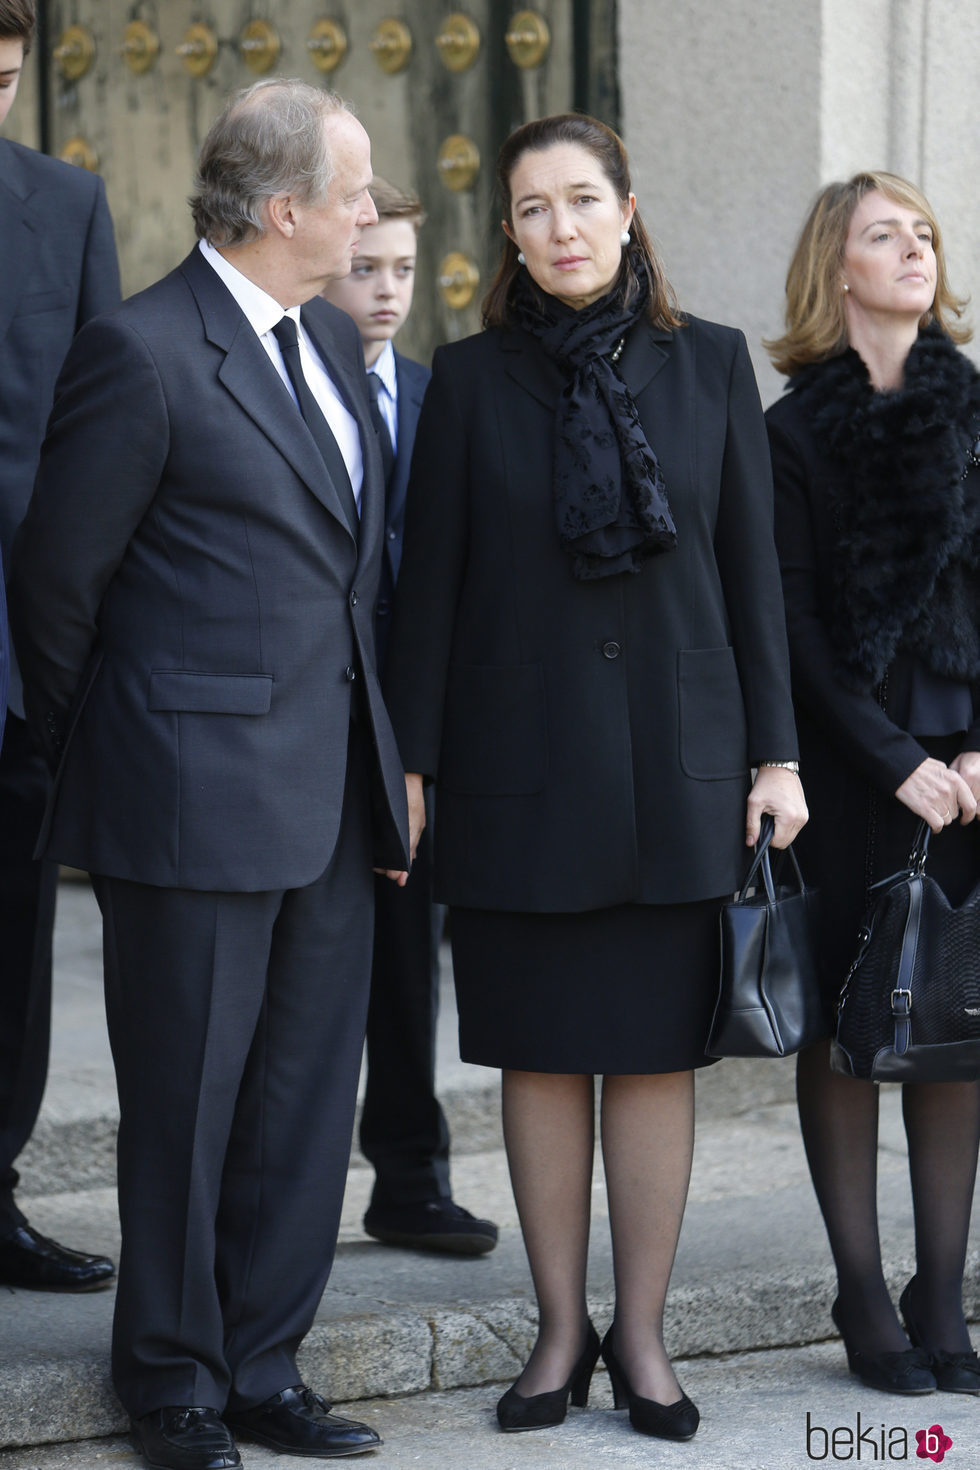 María Borbón Dos Sicilias durante el funeral de su padre, el duque de Calabria